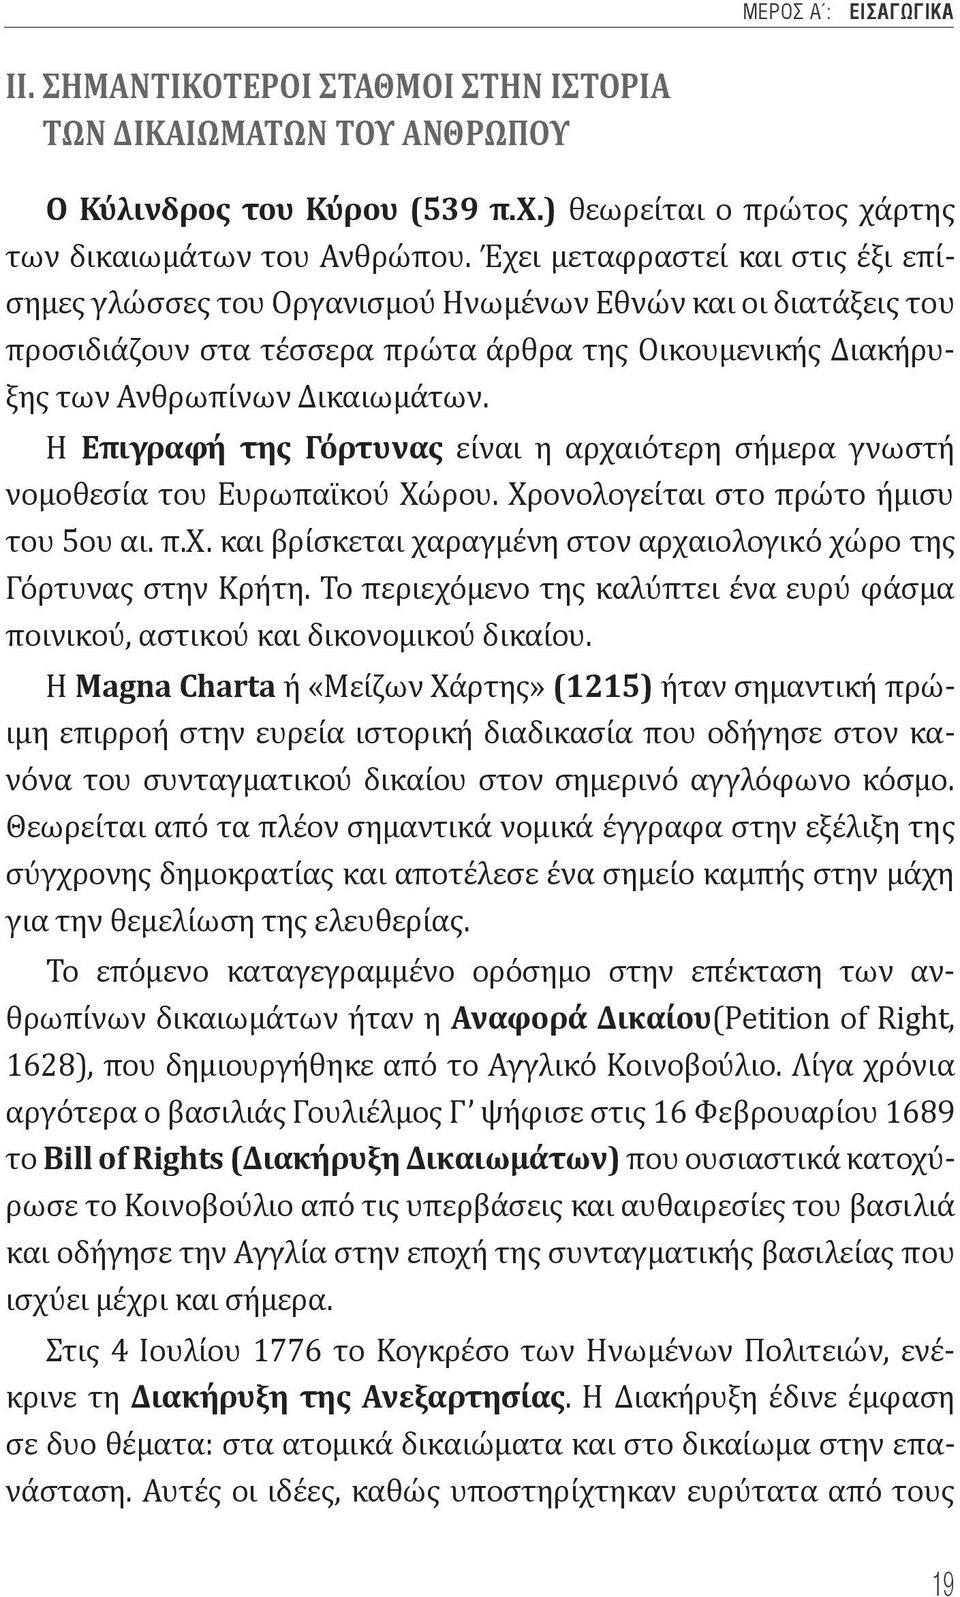 Η Επιγραφή της Γόρτυνας είναι η αρχαιότερη σήμερα γνωστή νομοθεσία του Ευρωπαϊκού Χώρου. Χρονολογείται στο πρώτο ήμισυ του 5ου αι. π.χ. και βρίσκεται χαραγμένη στον αρχαιολογικό χώρο της Γόρτυνας στην Κρήτη.